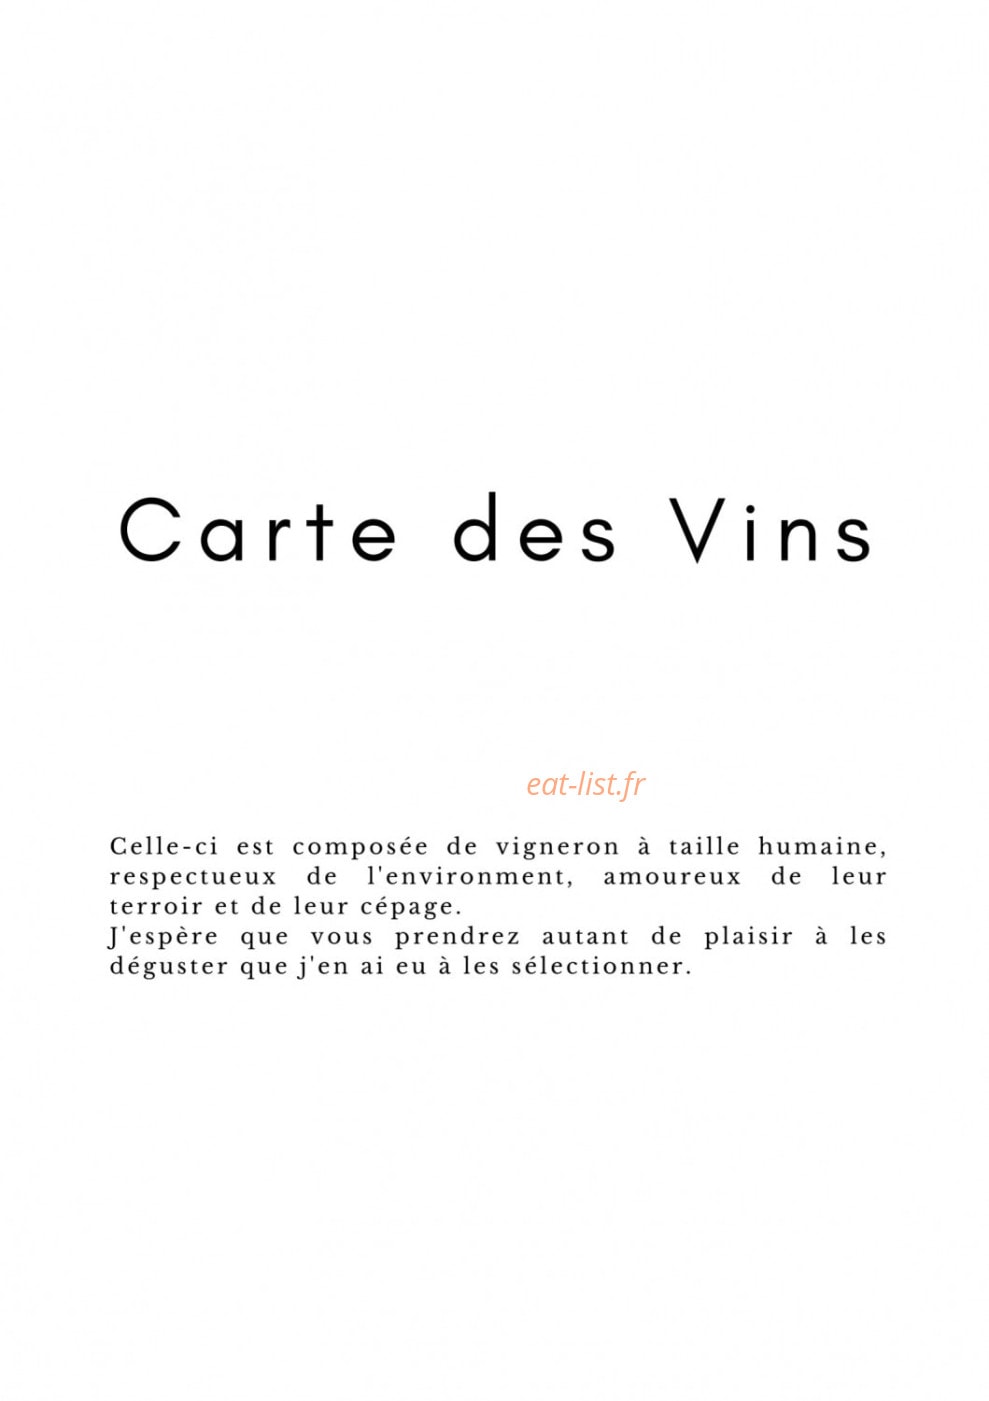 Menu Le Voyage D'Ernestine - La carte des vins